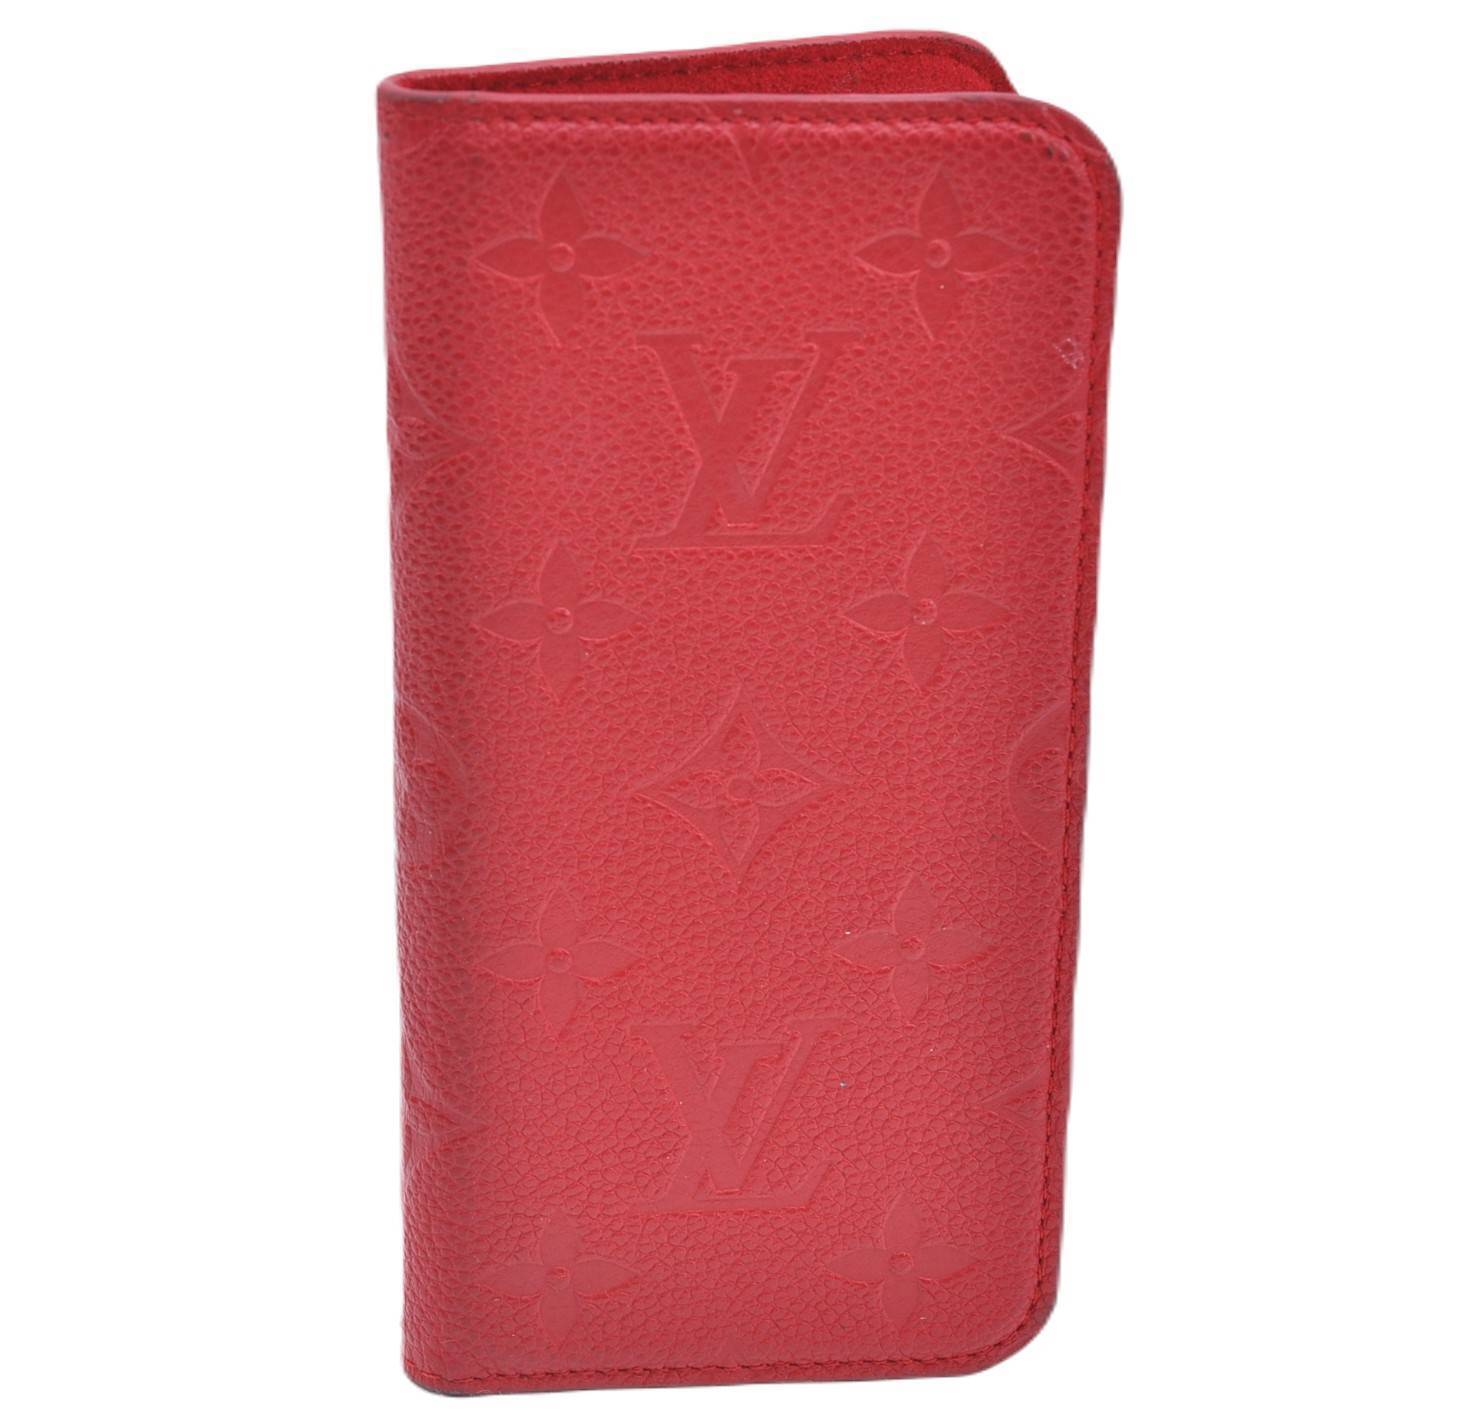 Auth LOUIS VUITTON Monogram Empreinte Folio iPhone X Xs Case Red M63588 LV G4875